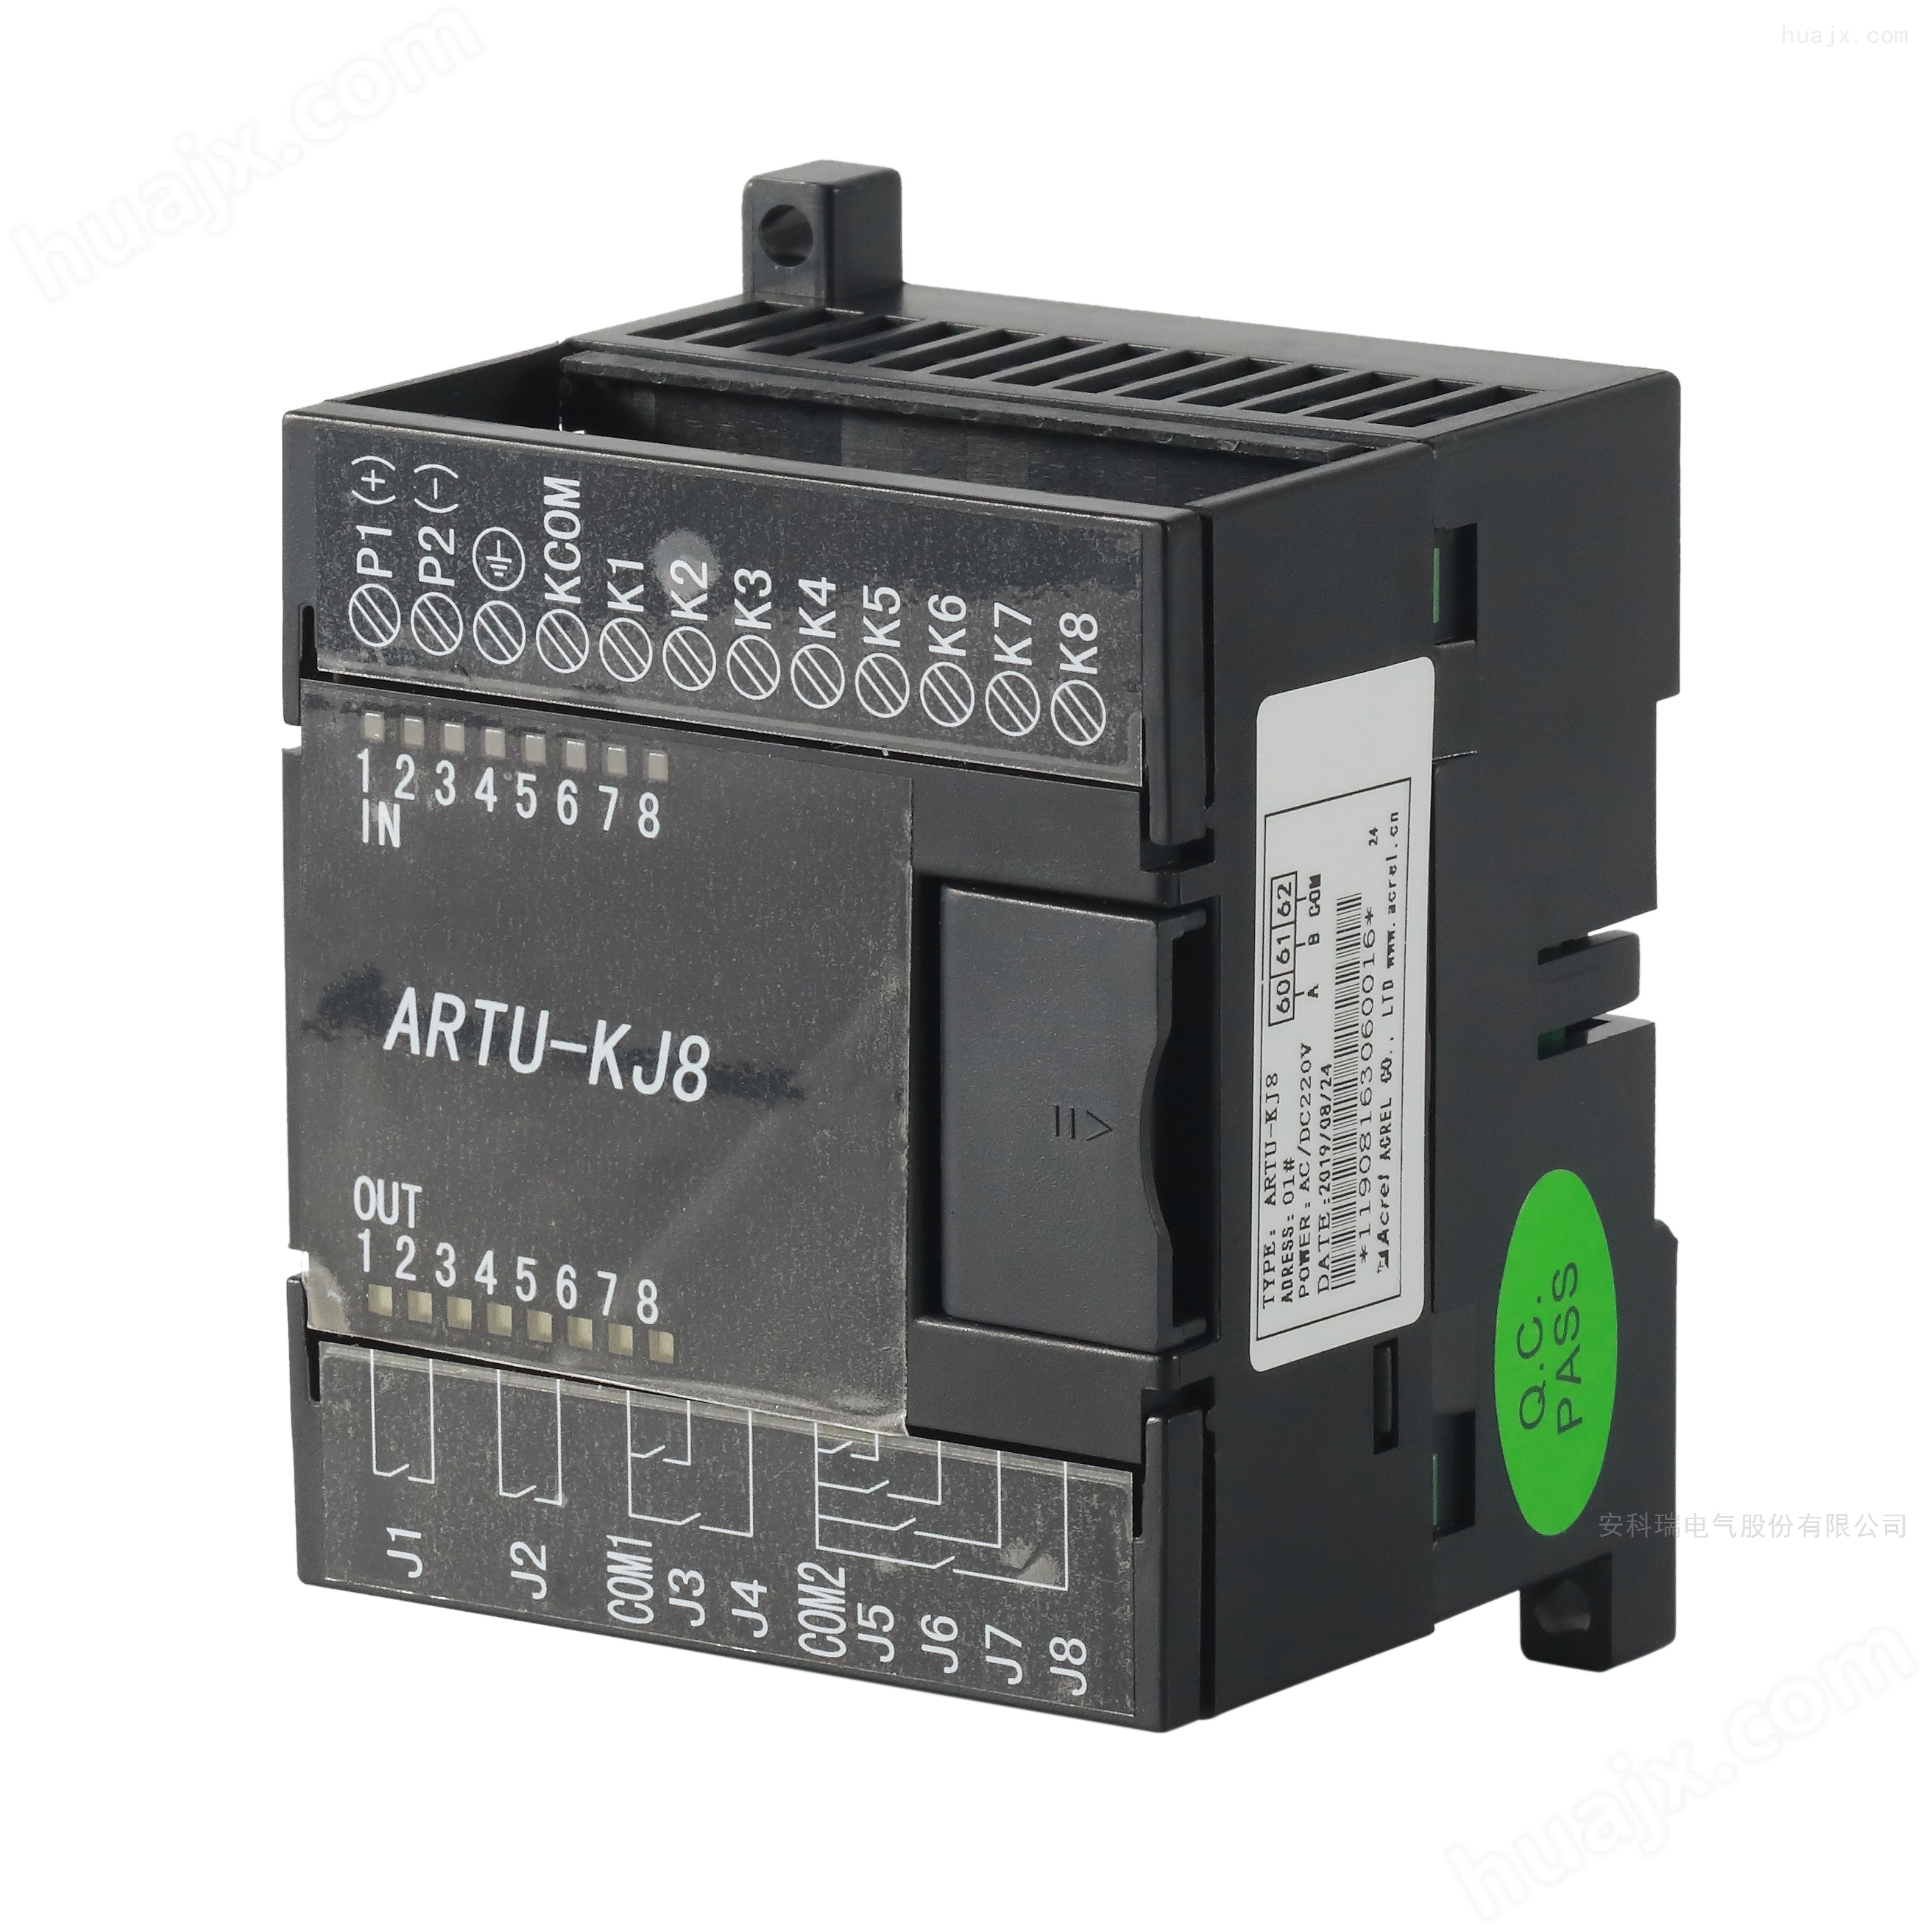 ARTU系列多回路测控仪 遥信遥控组合单元